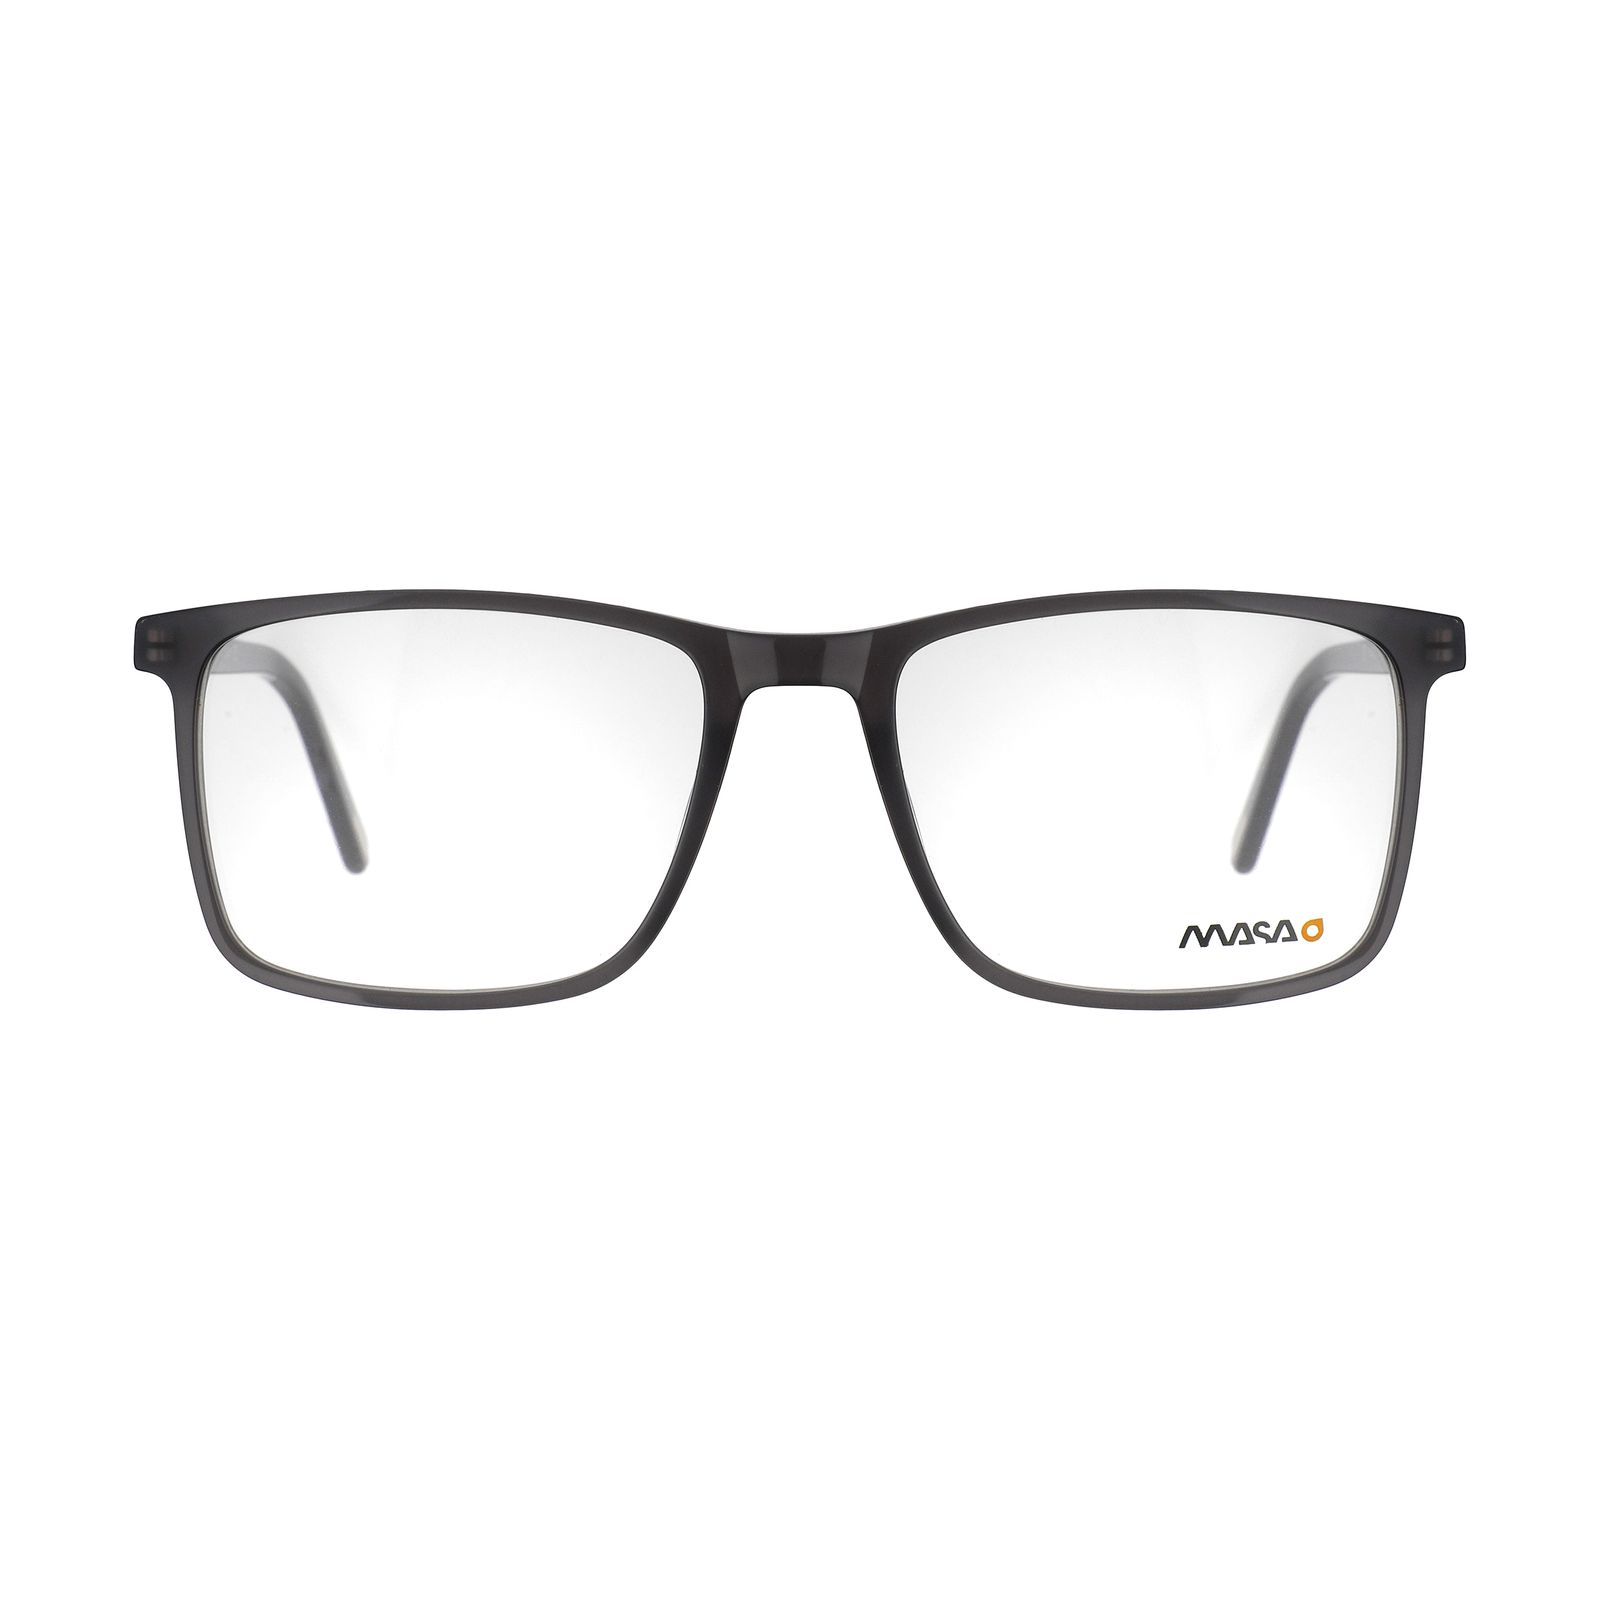 فریم عینک طبی ماسائو مدل 13185-608 -  - 1